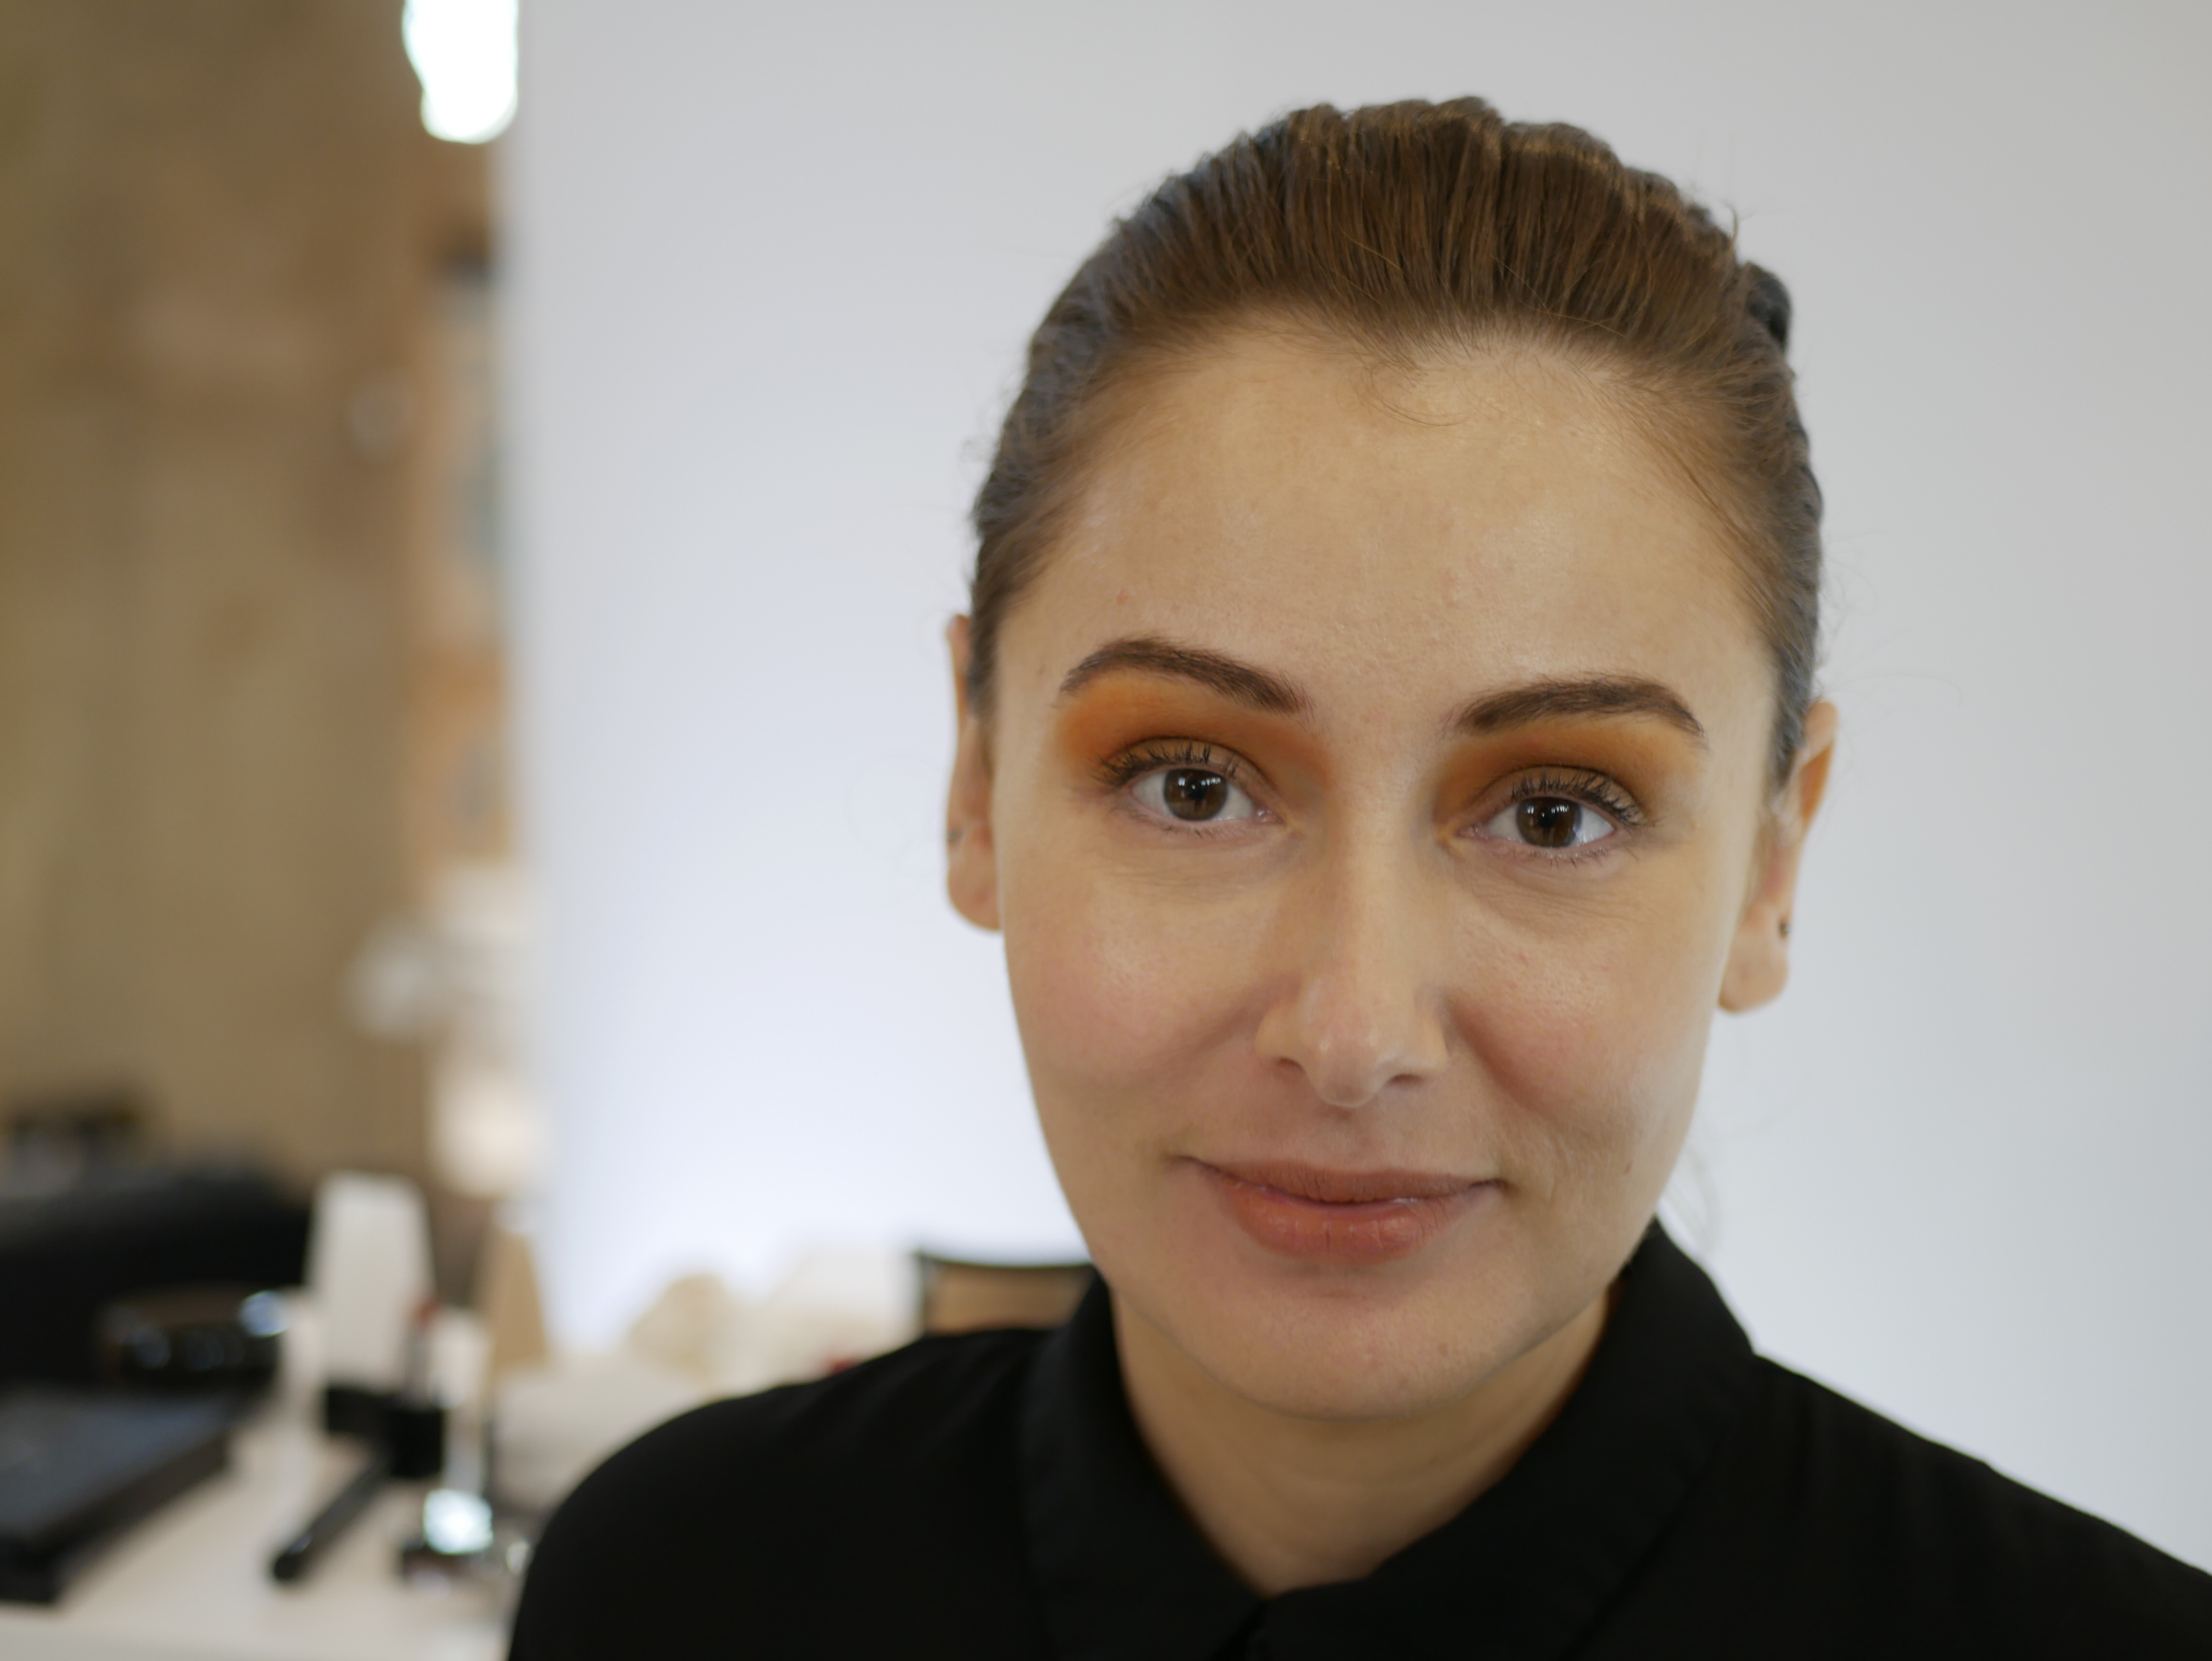 ”Illamsquas makeuppaletter är allt du behöver för en komplett look, de har både starka och neutrala färger för allas personliga önskemål”